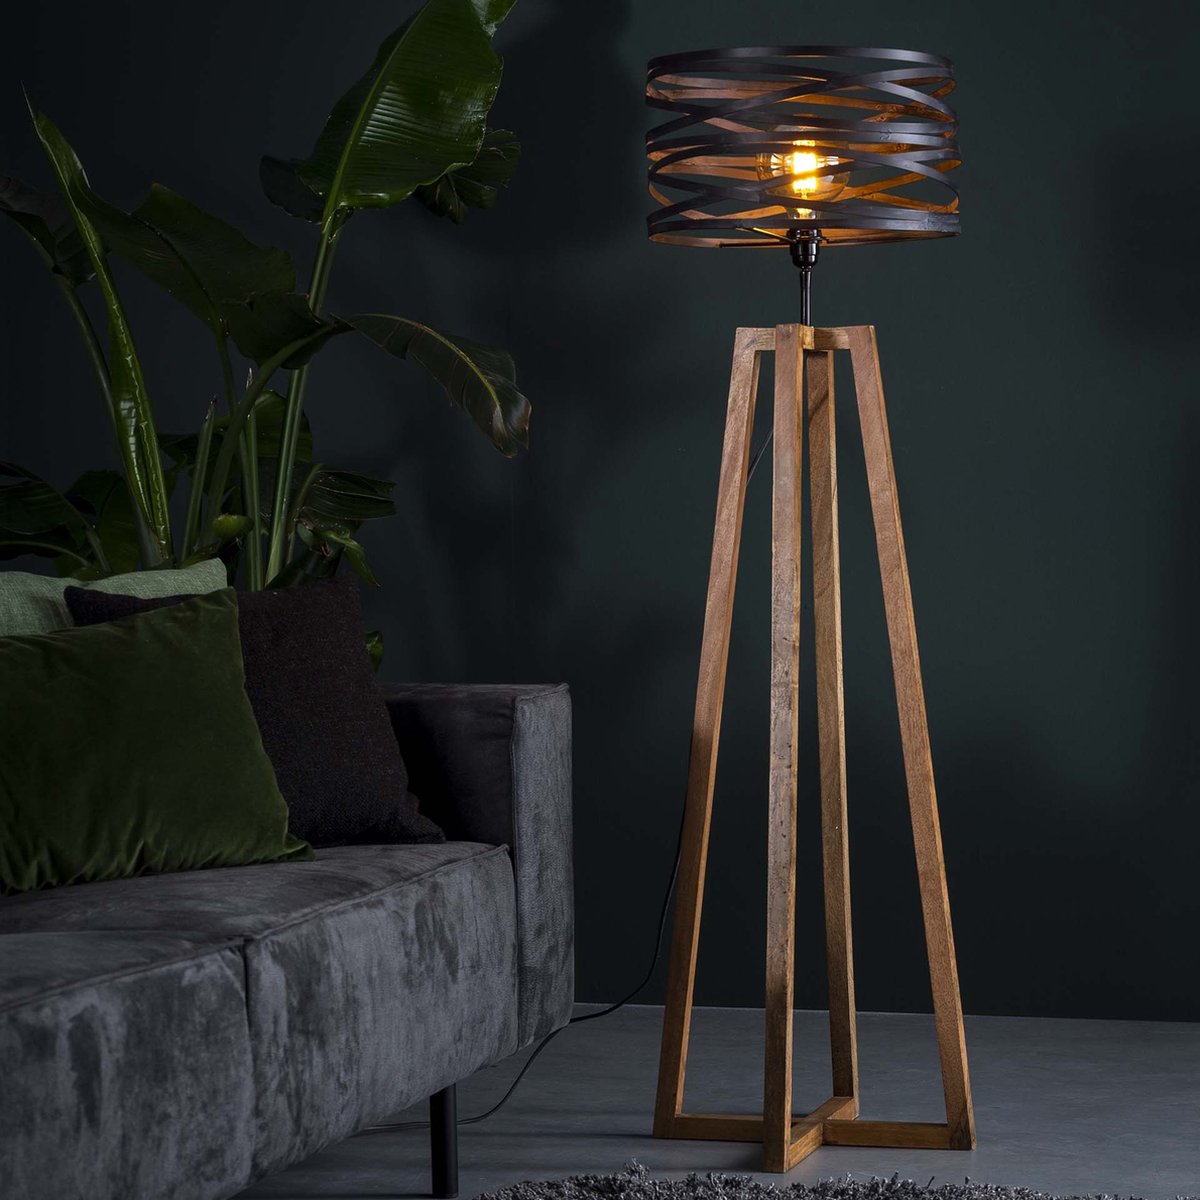 Landelijke vloerlamp wikkel houten kruisframe | 1 lichts | bruin | metaal | 135 cm hoog | Ø 41 cm | staande lamp | modern / sfeervol design